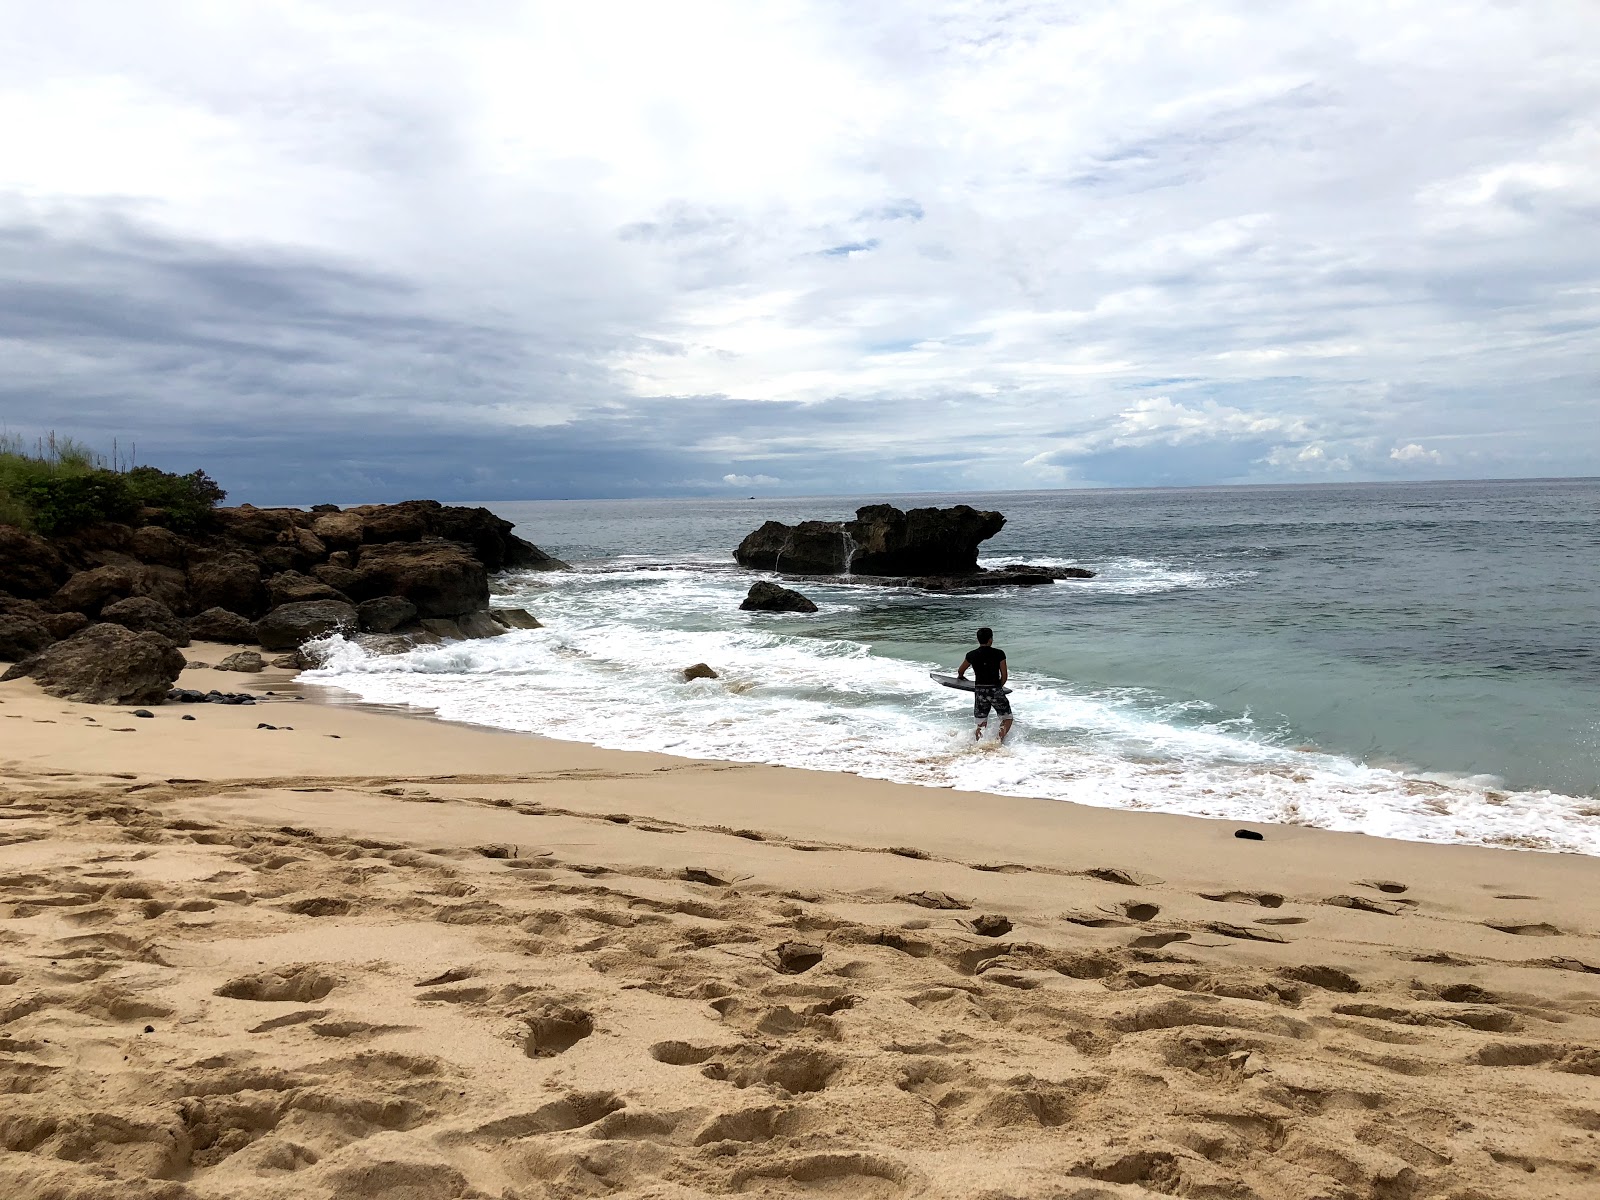 Fotografie cu Makua Beach - locul popular printre cunoscătorii de relaxare